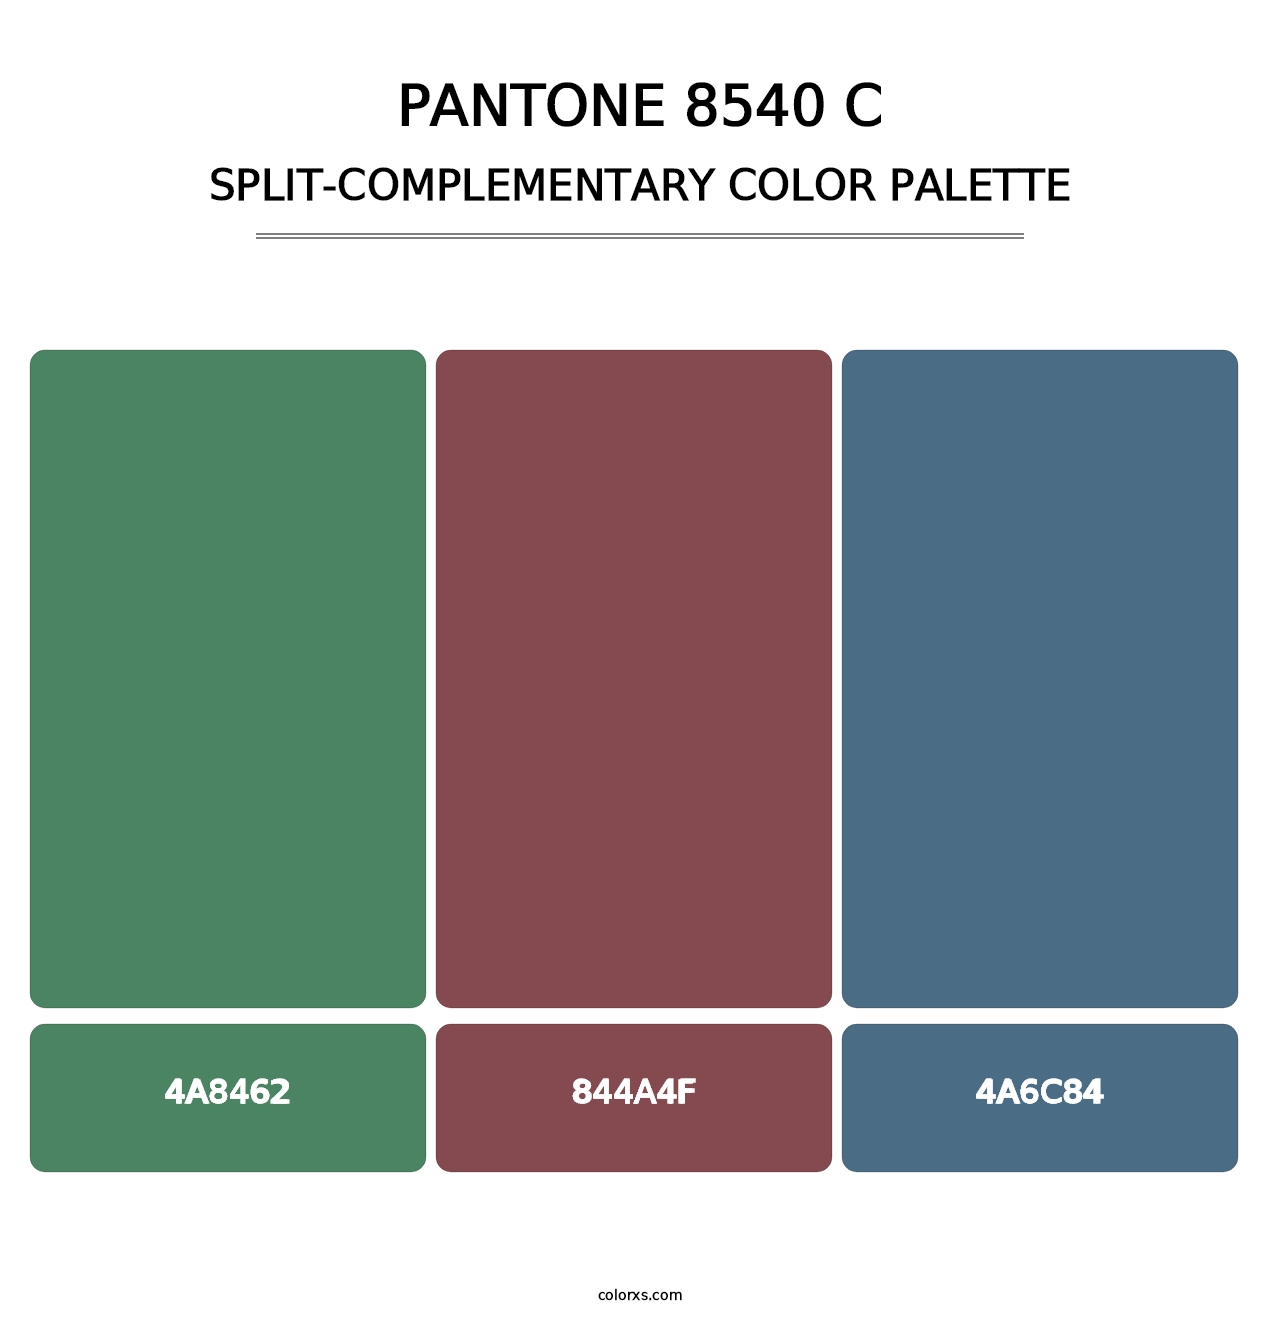 PANTONE 8540 C - Split-Complementary Color Palette